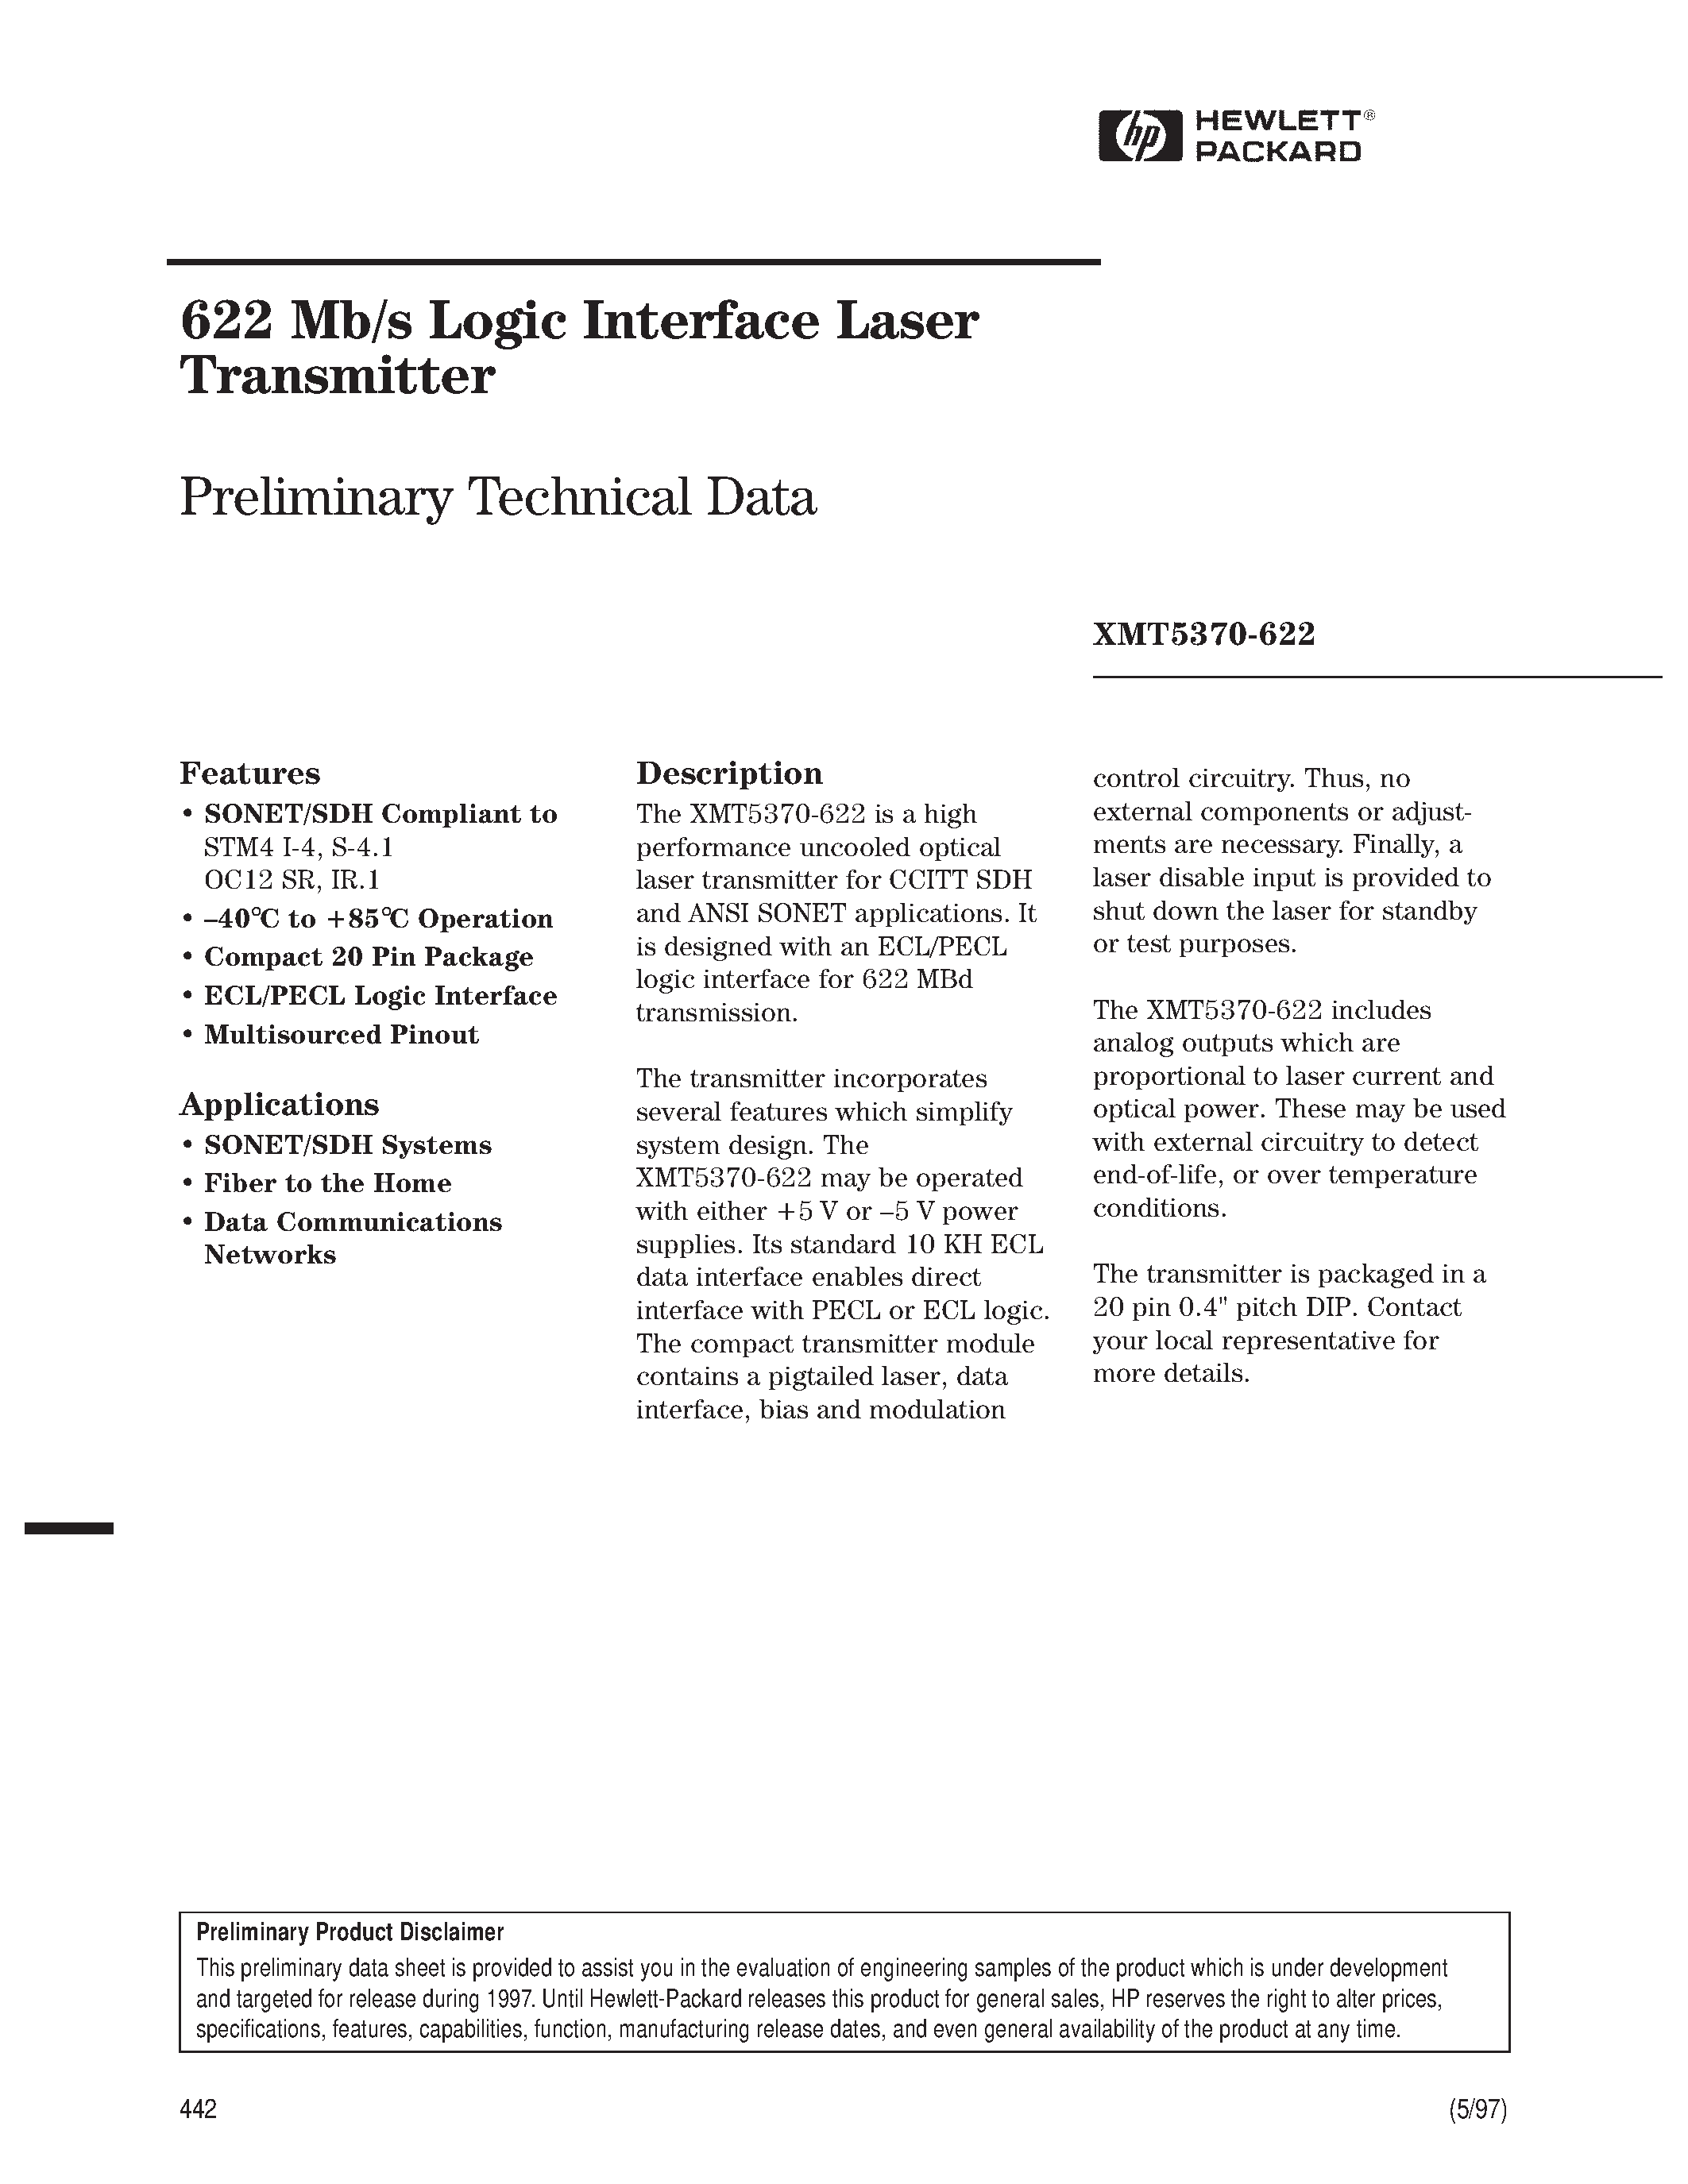 Datasheet XMT5160B-622-DN - 622 Mb/s Logic Interface Laser Transmitter page 1